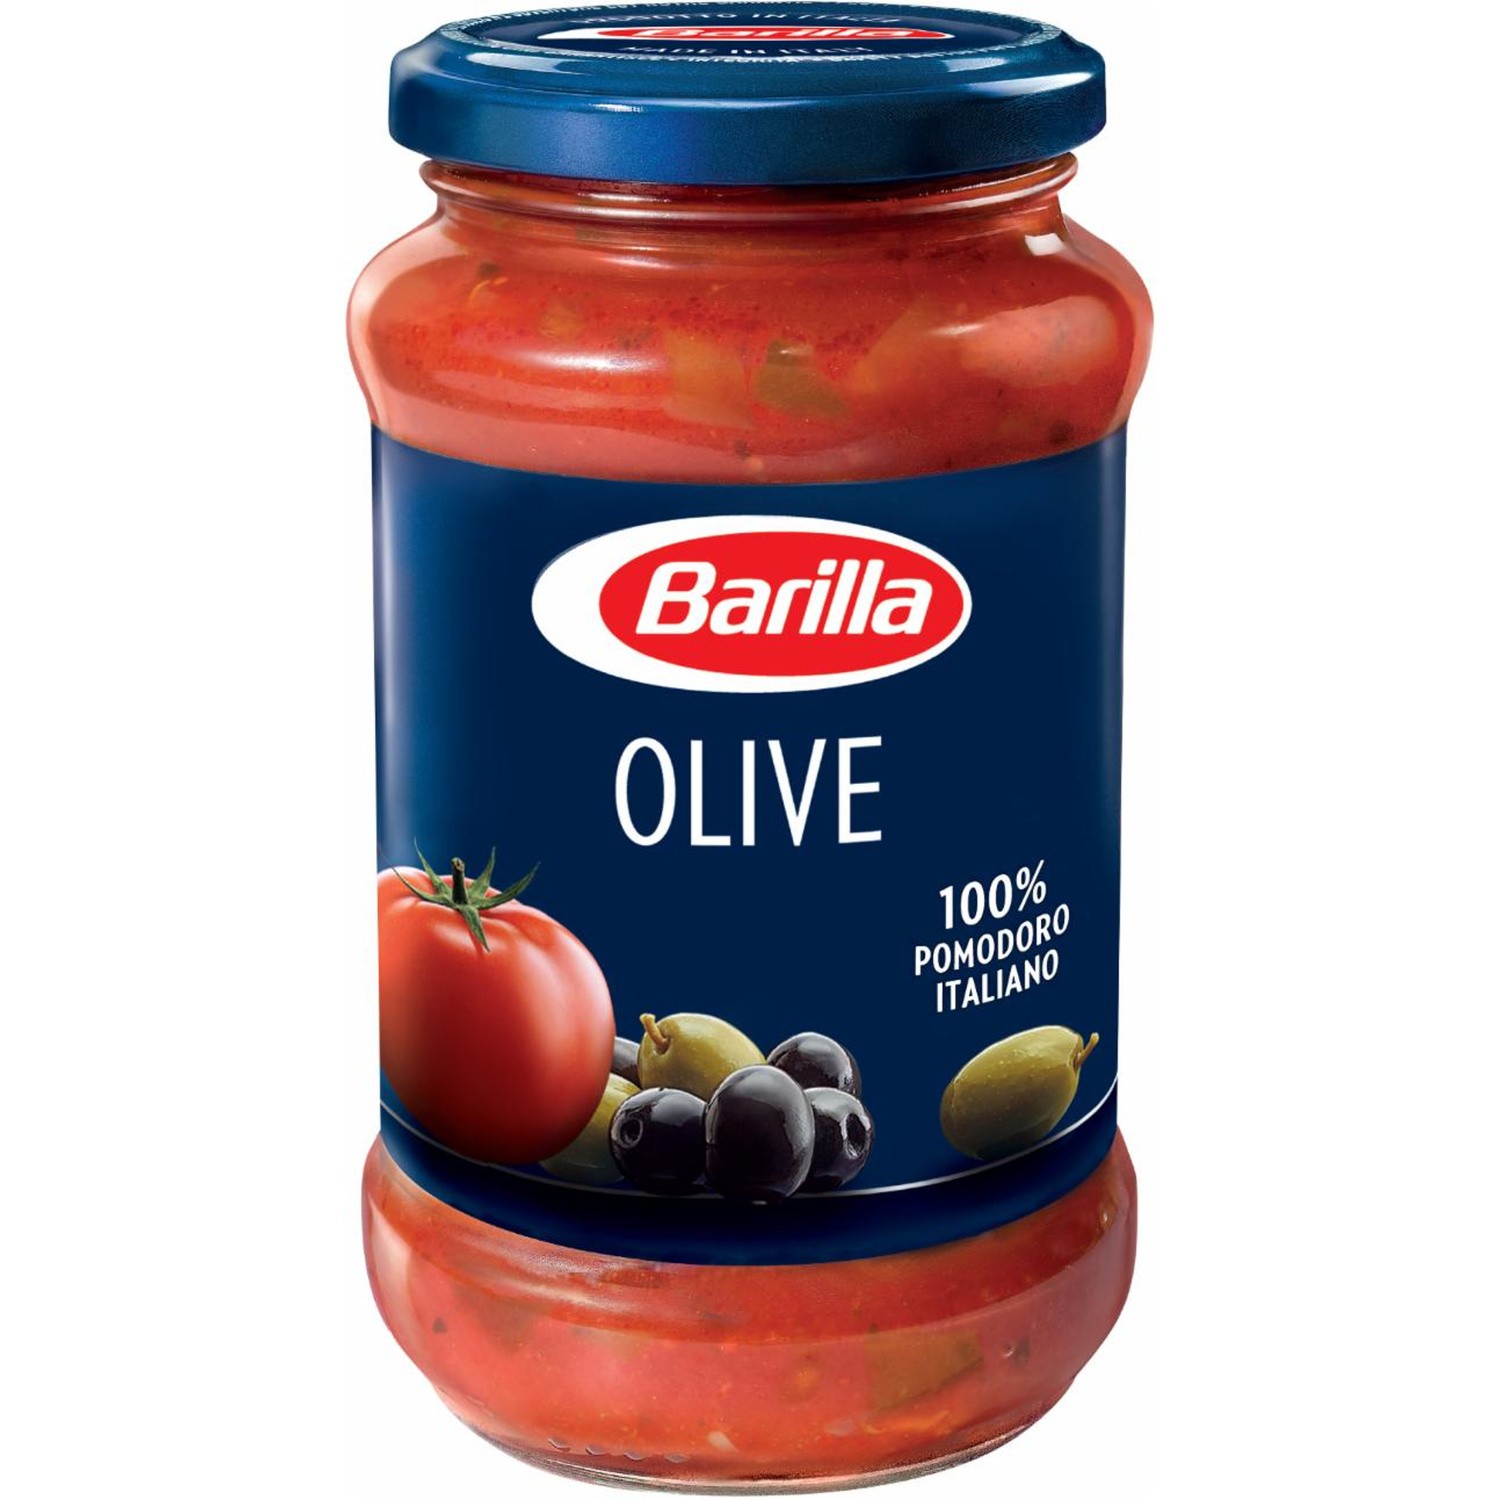 Sauce tomates et olives